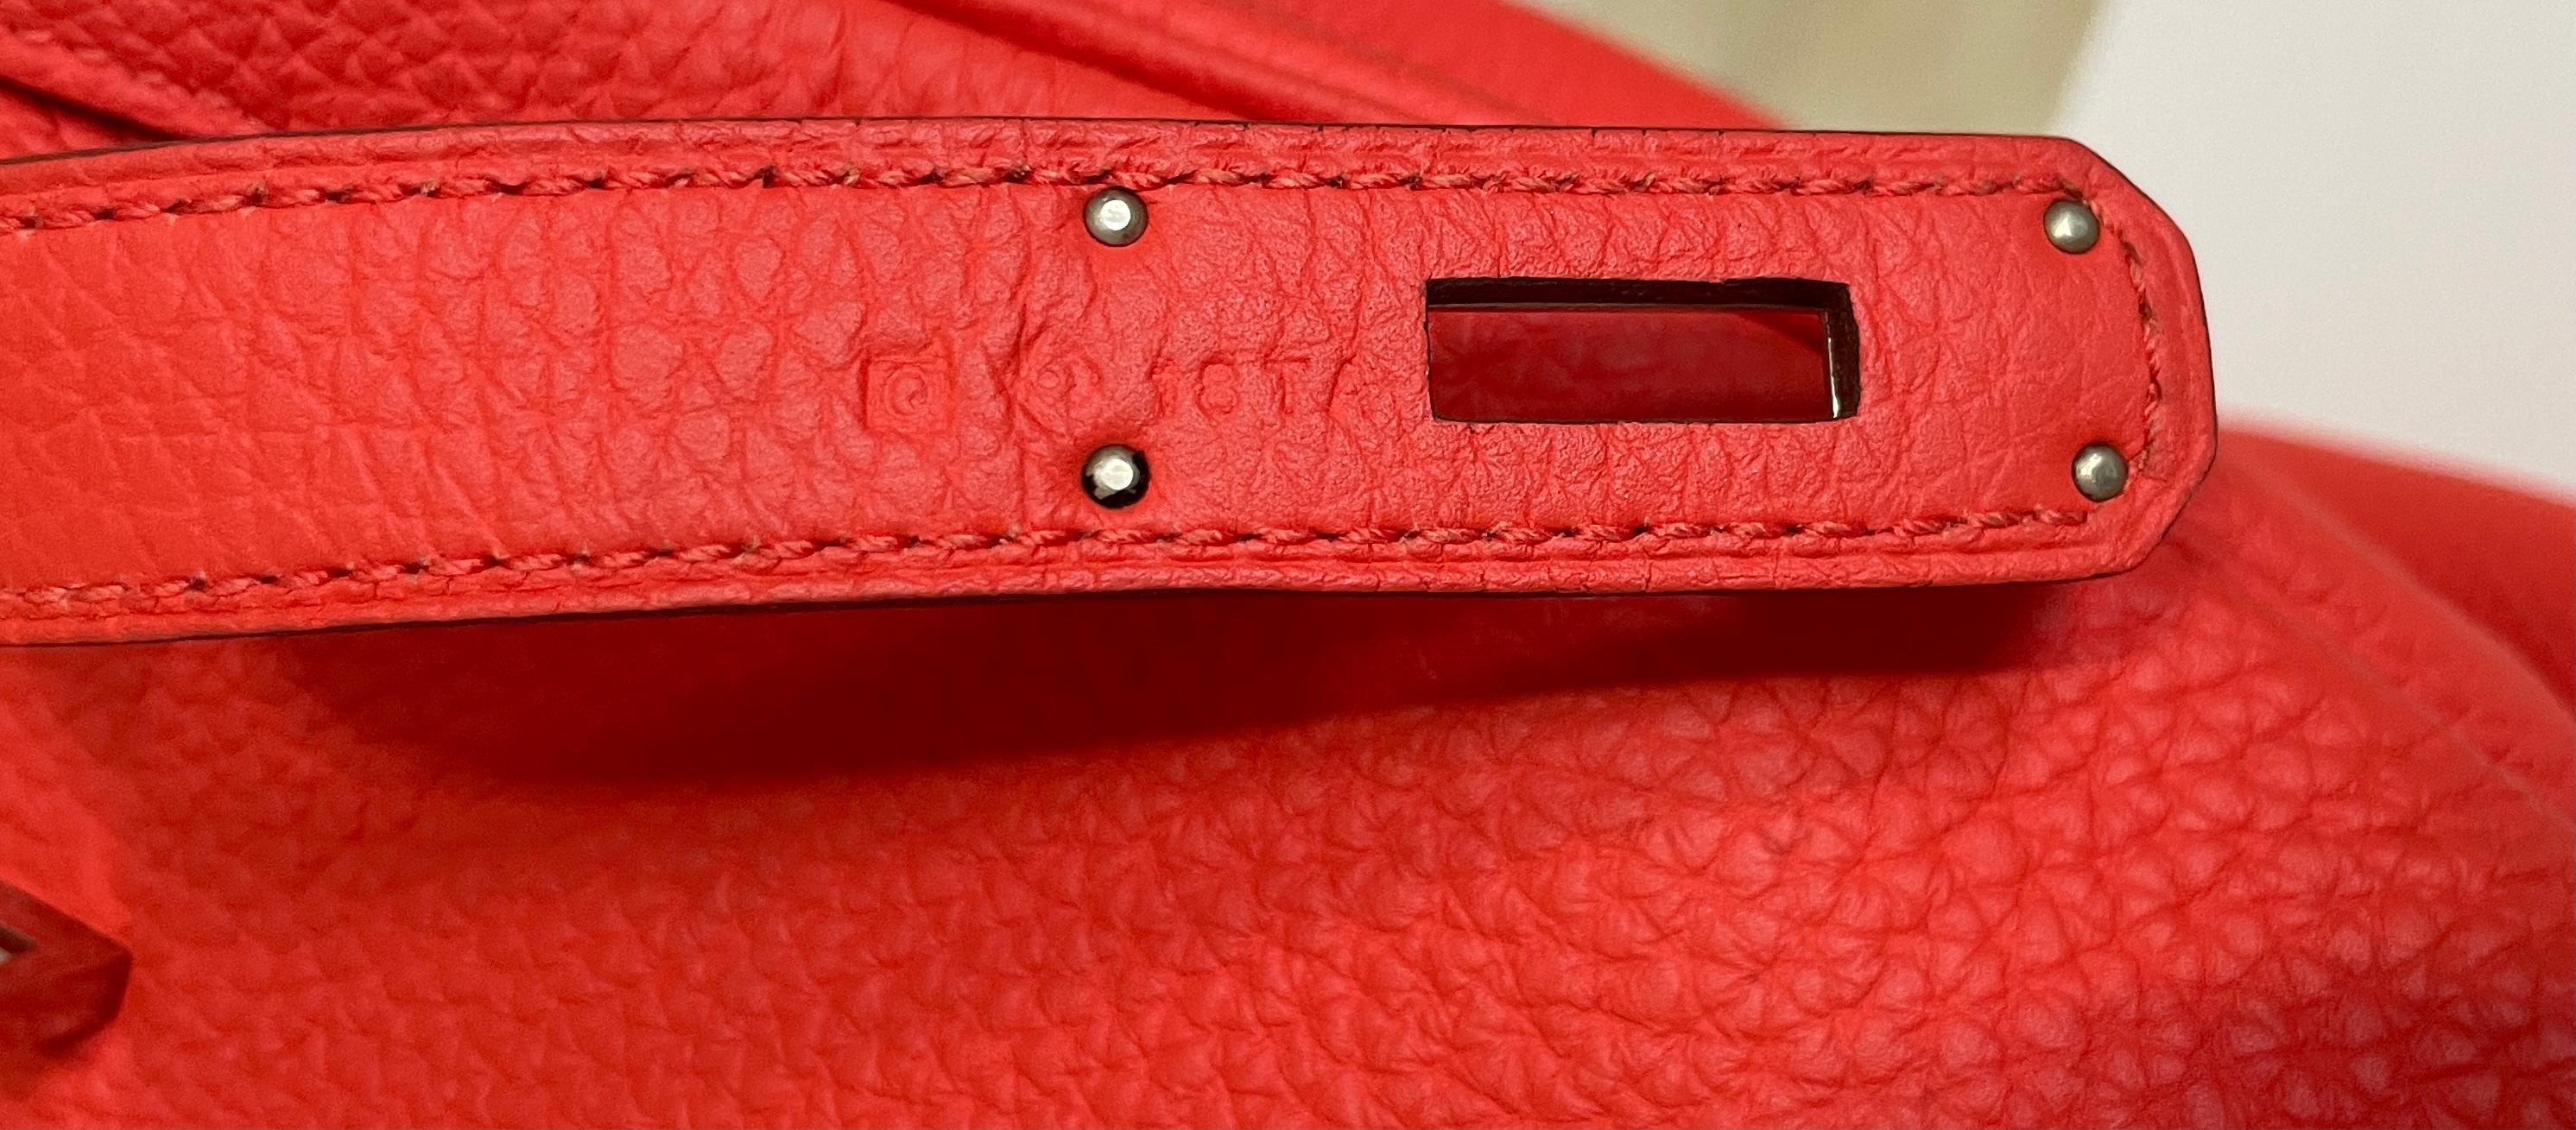 Hermès - Sac Birkin 35 rose Jaipur en palladium rouge et rose avec accessoires en métal  3